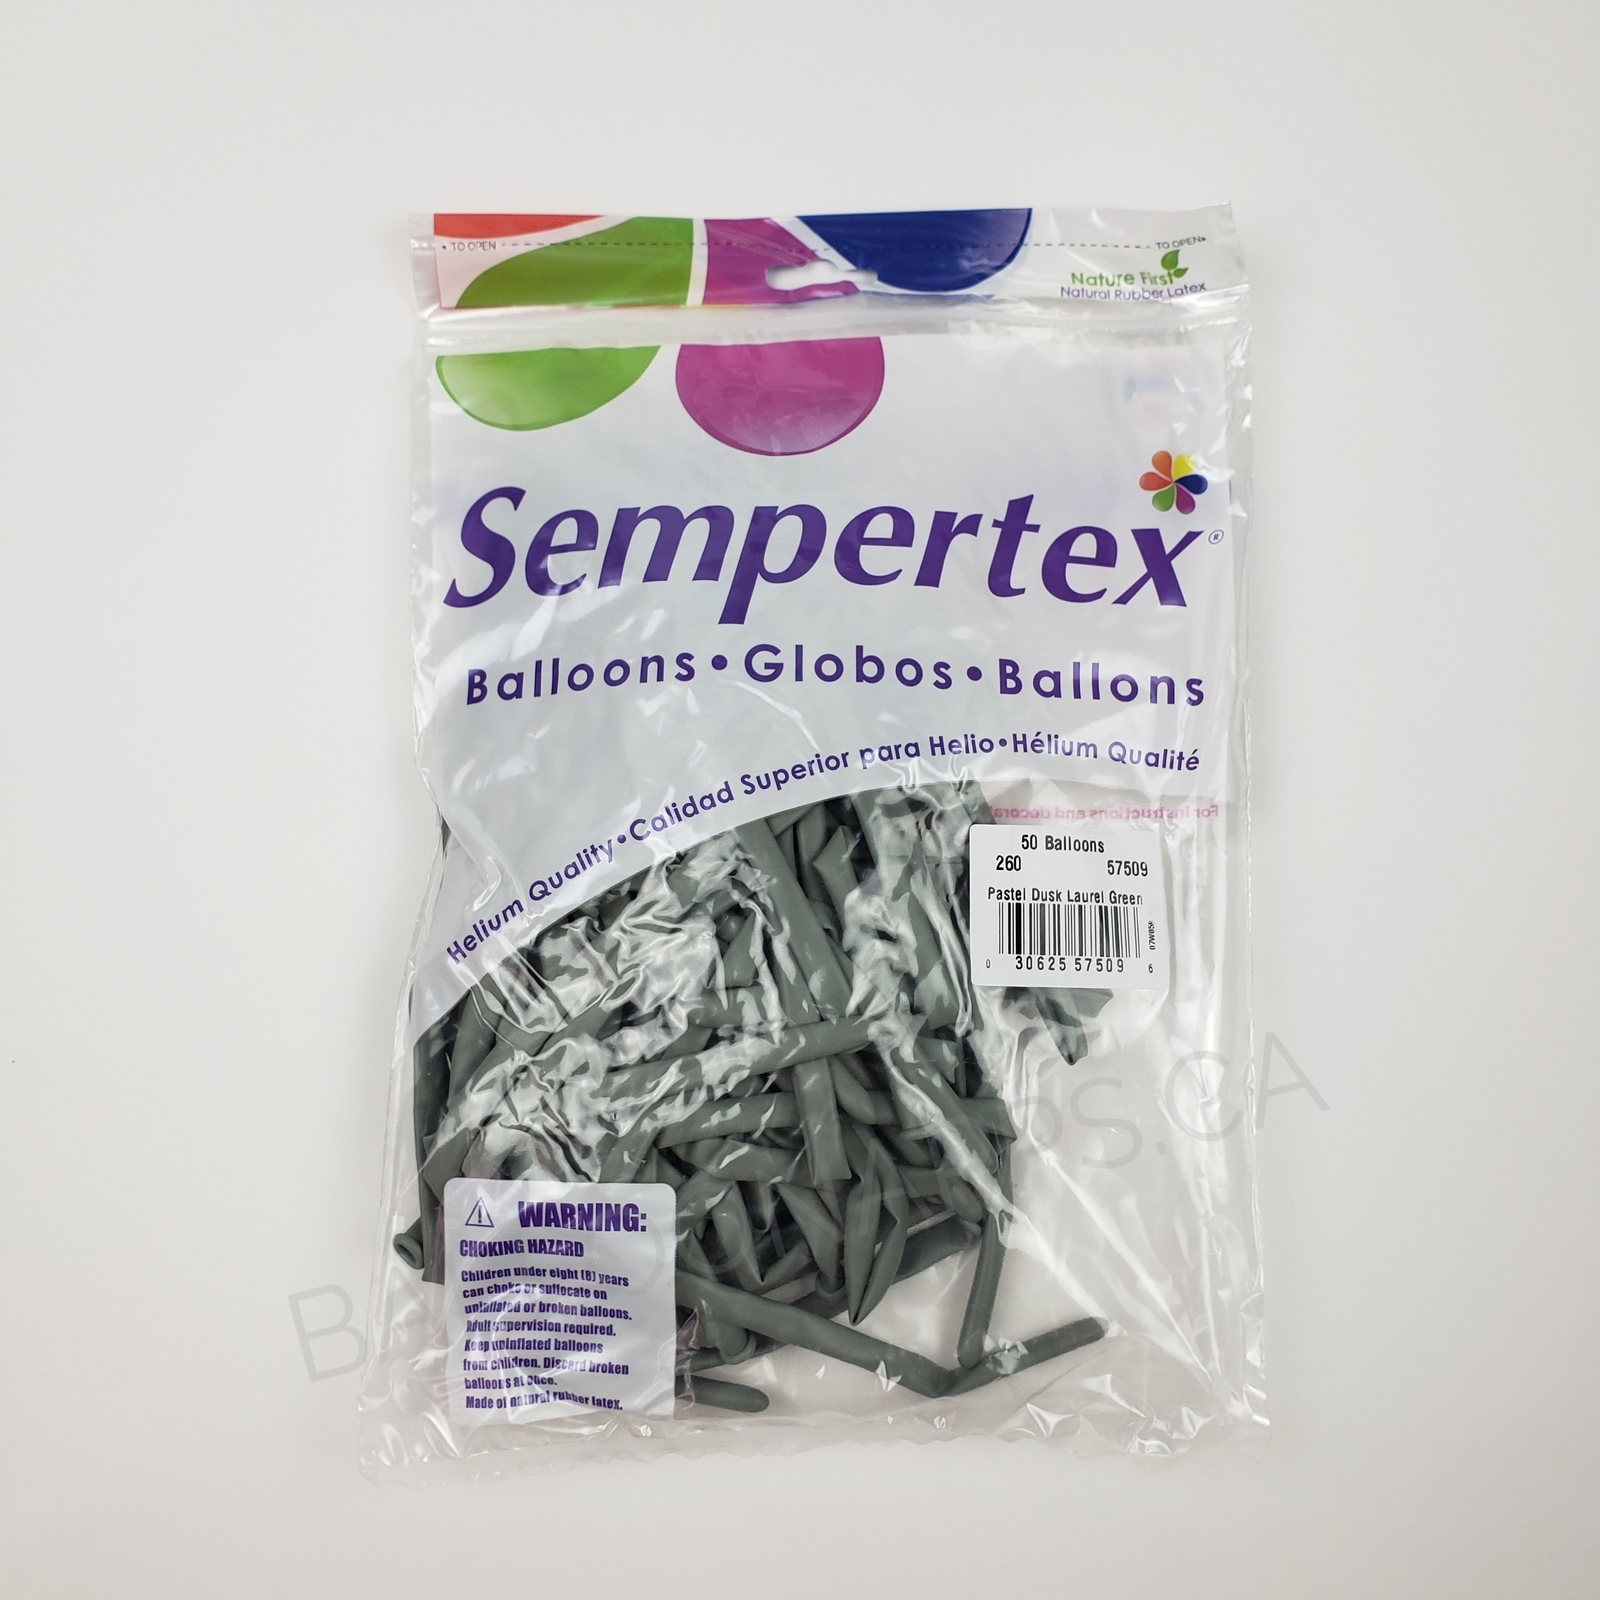 Sempertex SEM (50) 260 Pastel Dusk Laurel Green Latex balloons